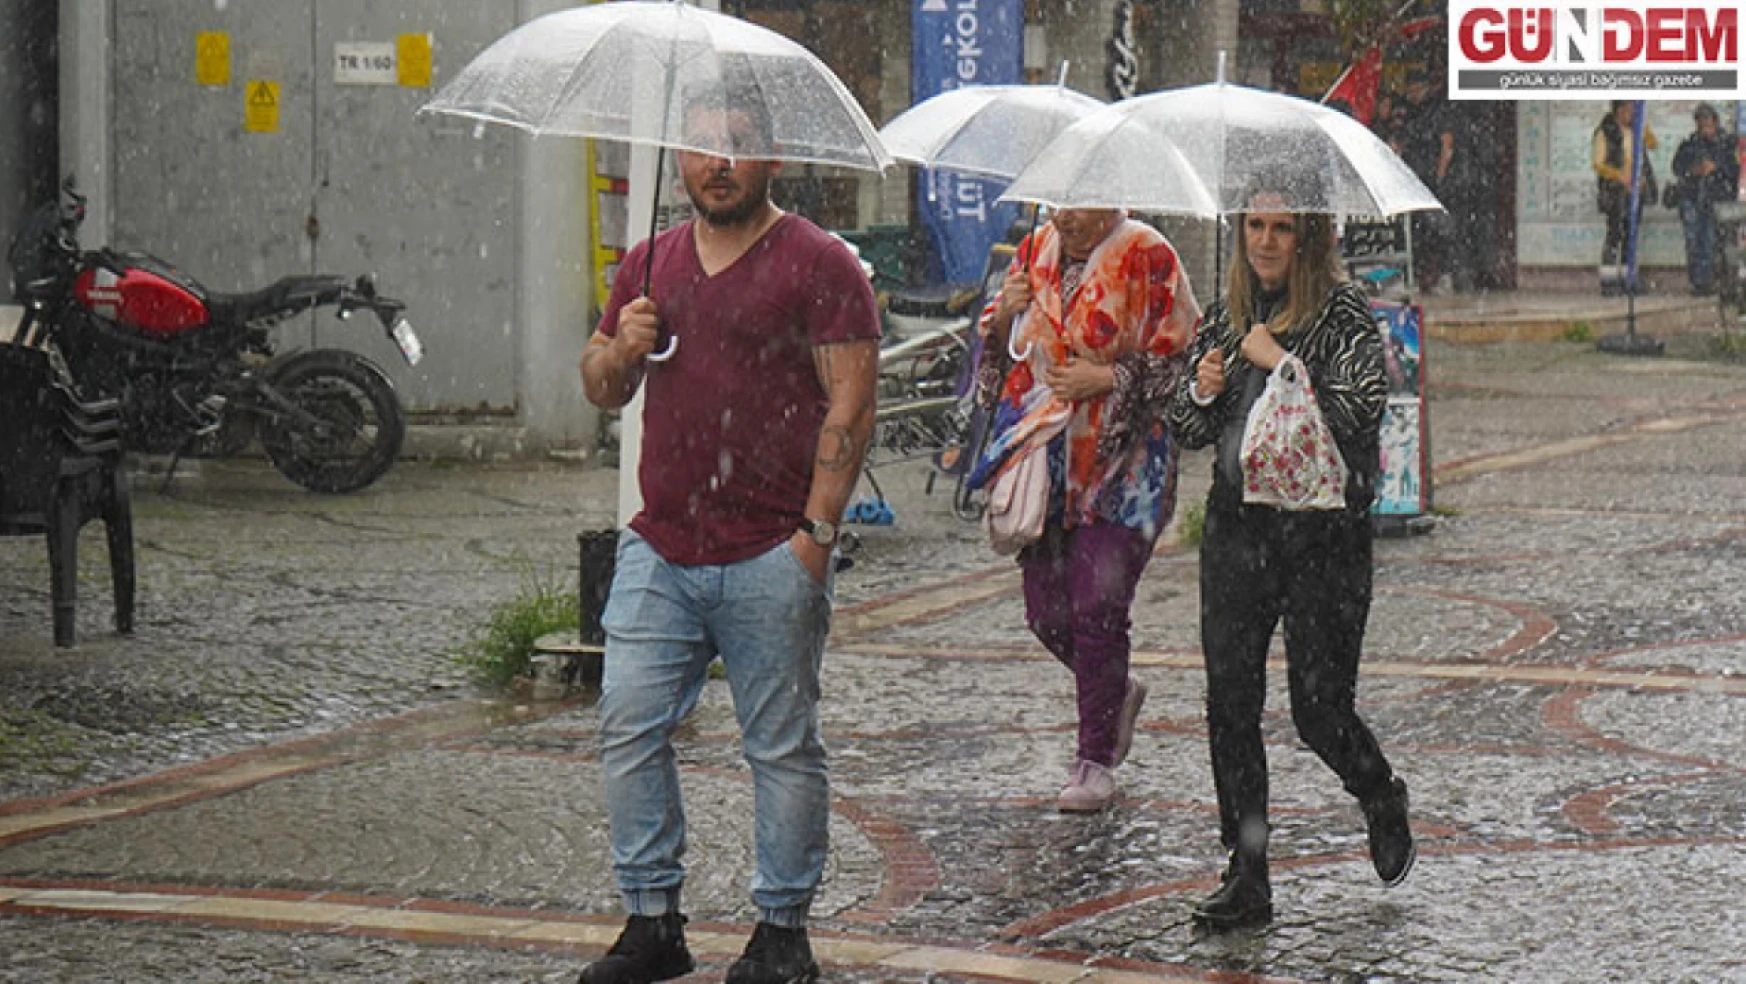 Yağışlı hava vatandaşları hazırlıksız yakaladı